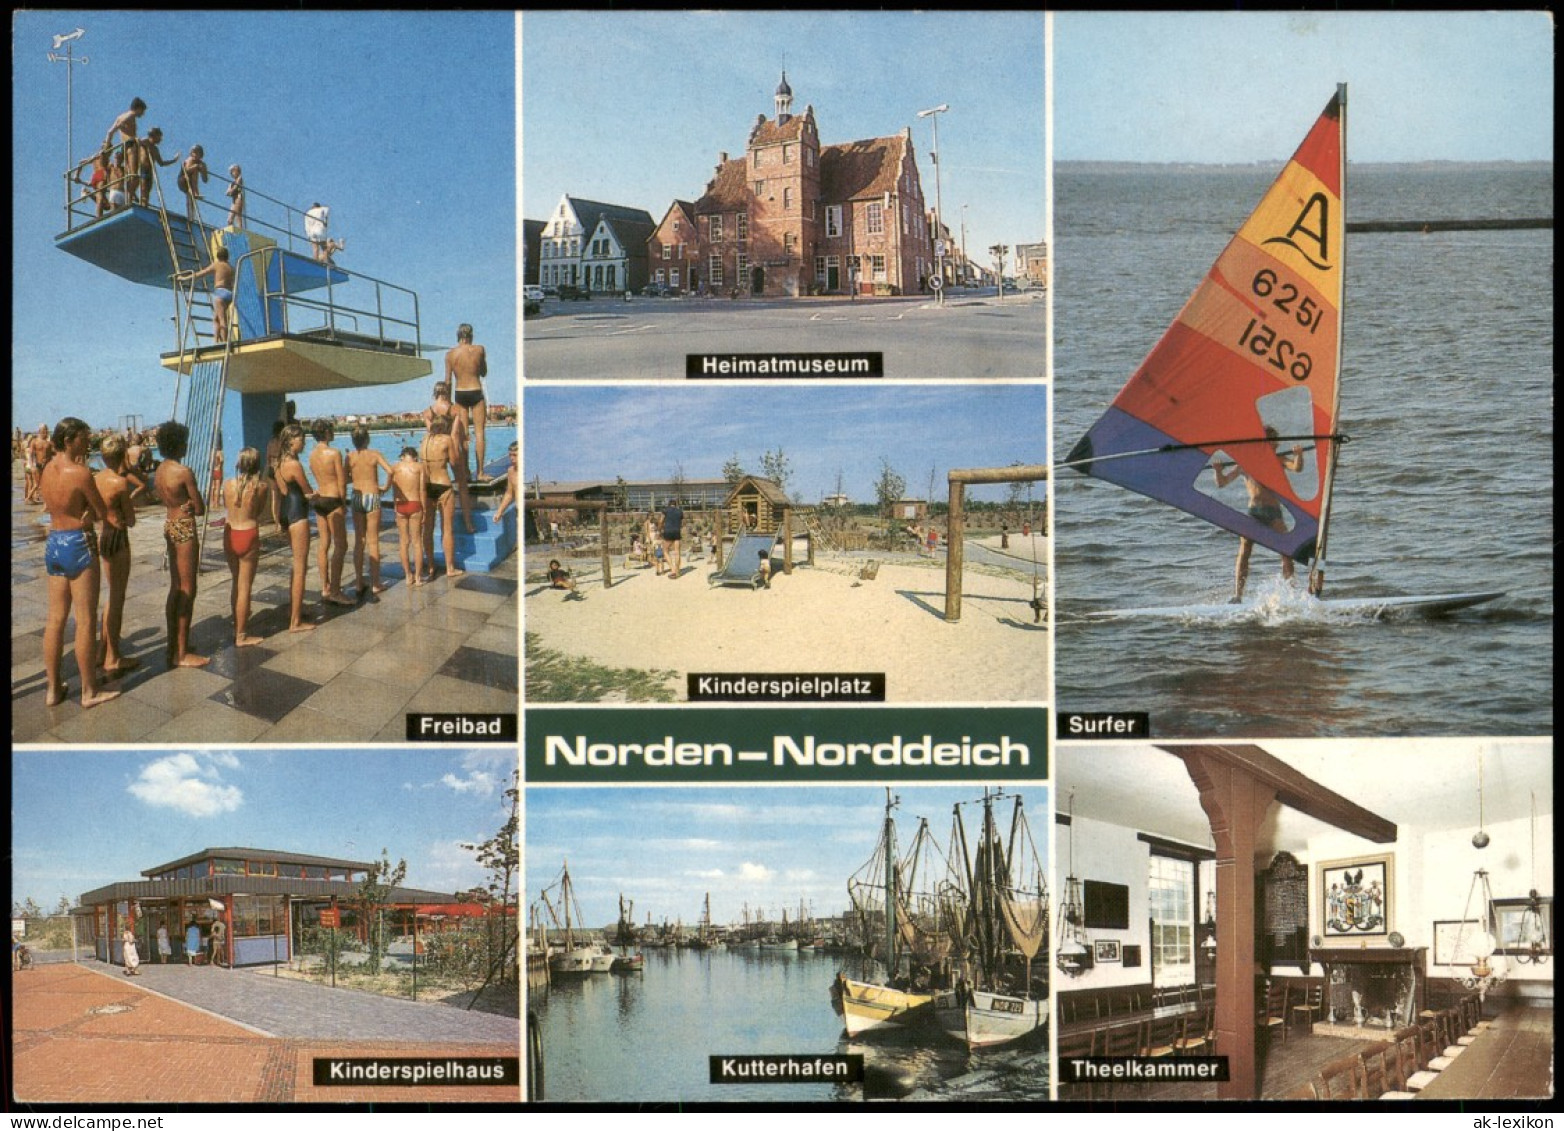 Norddeich-Norden MB Freibad, Kinder-Spielhaus, Kutter-Hafen, Theelkammer 1989 - Norden